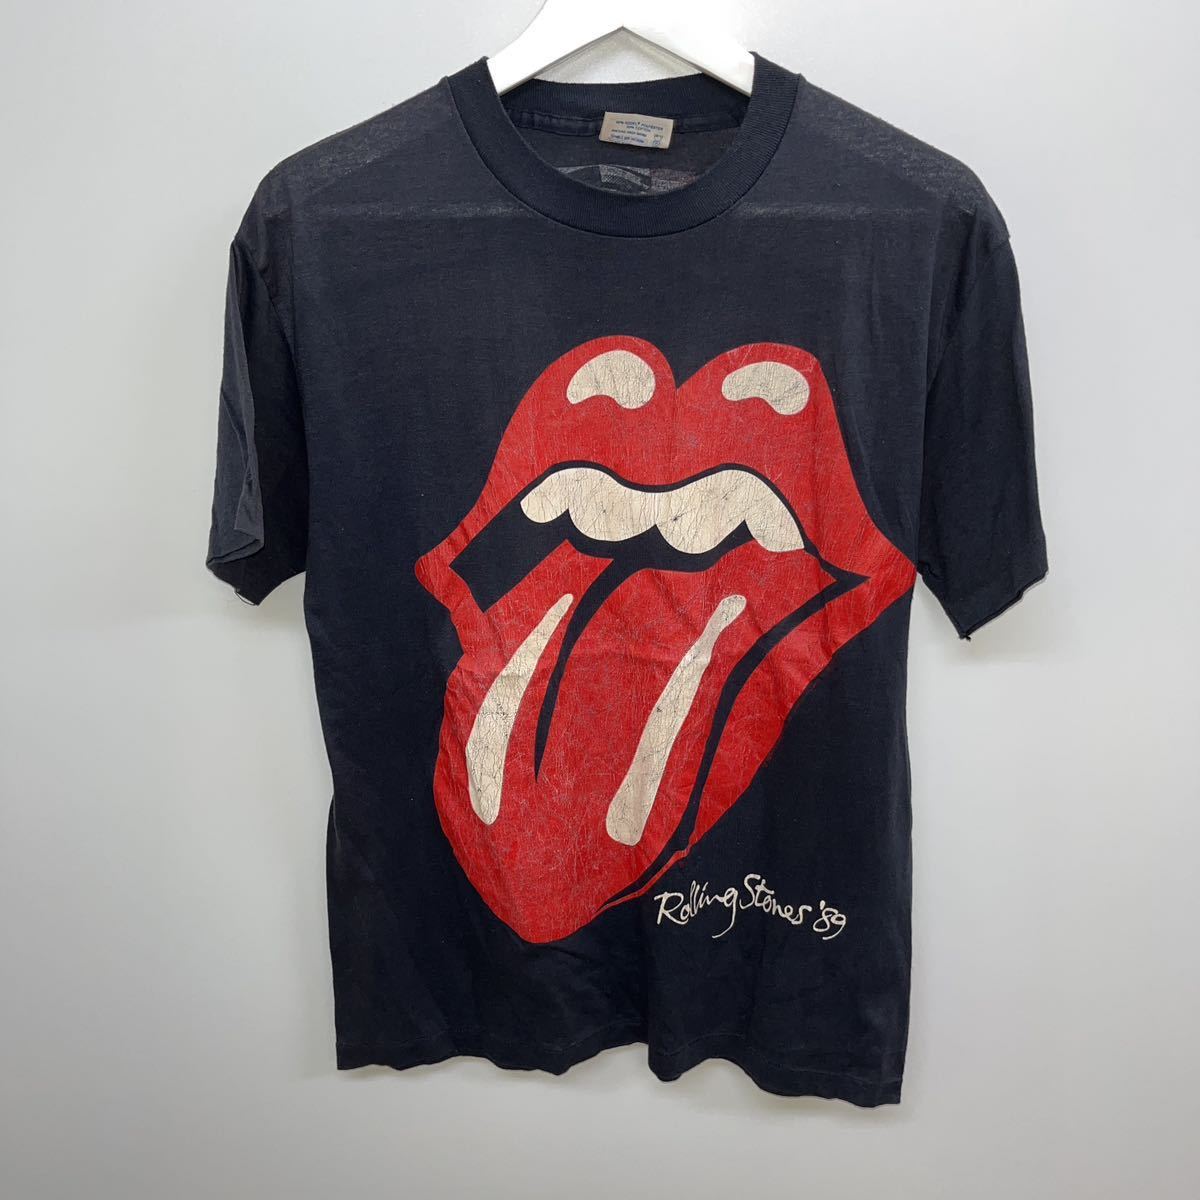  希少 USA製80s Rolling Stones ヴィンテージTシャツ サイズL